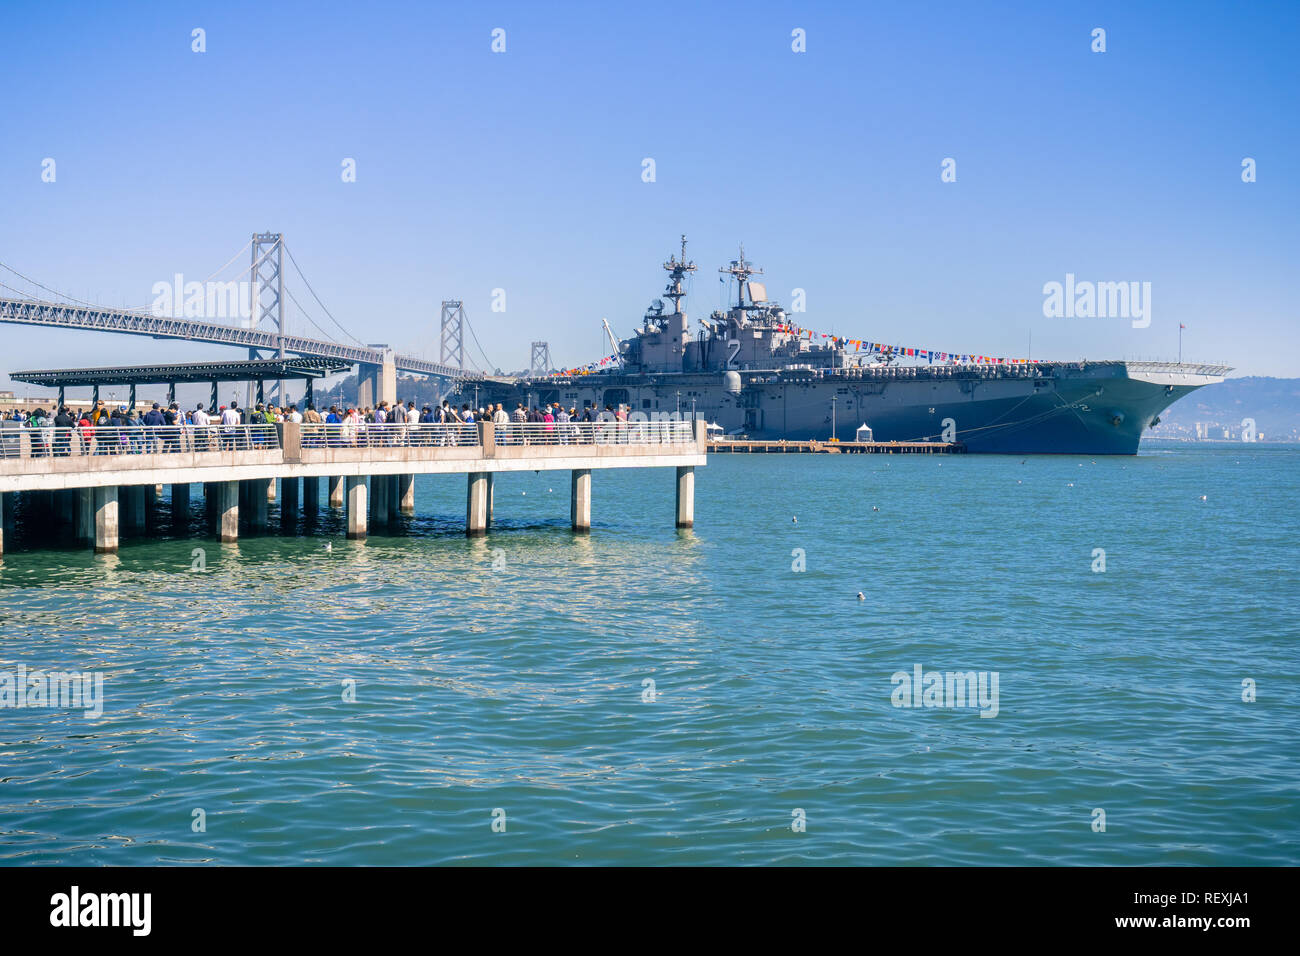 7 octobre 2017 San Francisco/CA/USA - navire ancré dans l'un des piliers de la ville pendant la semaine de la flotte ; personnes debout en ligne pour une visite gratuite Banque D'Images